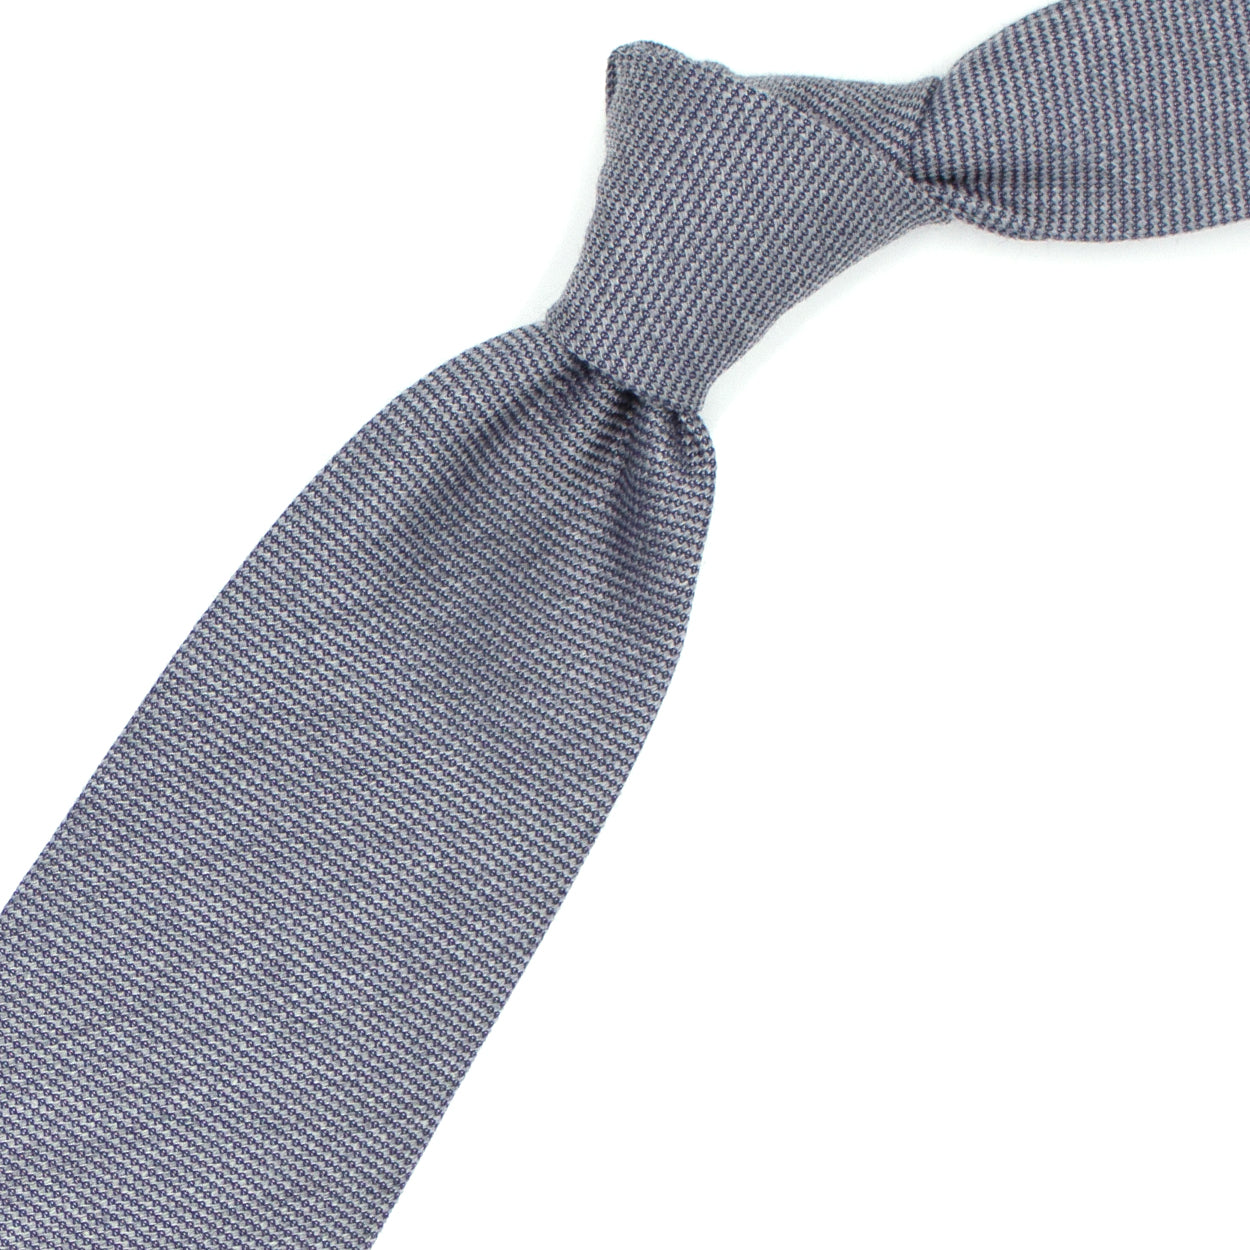 Cravatta tramata grigio chiaro